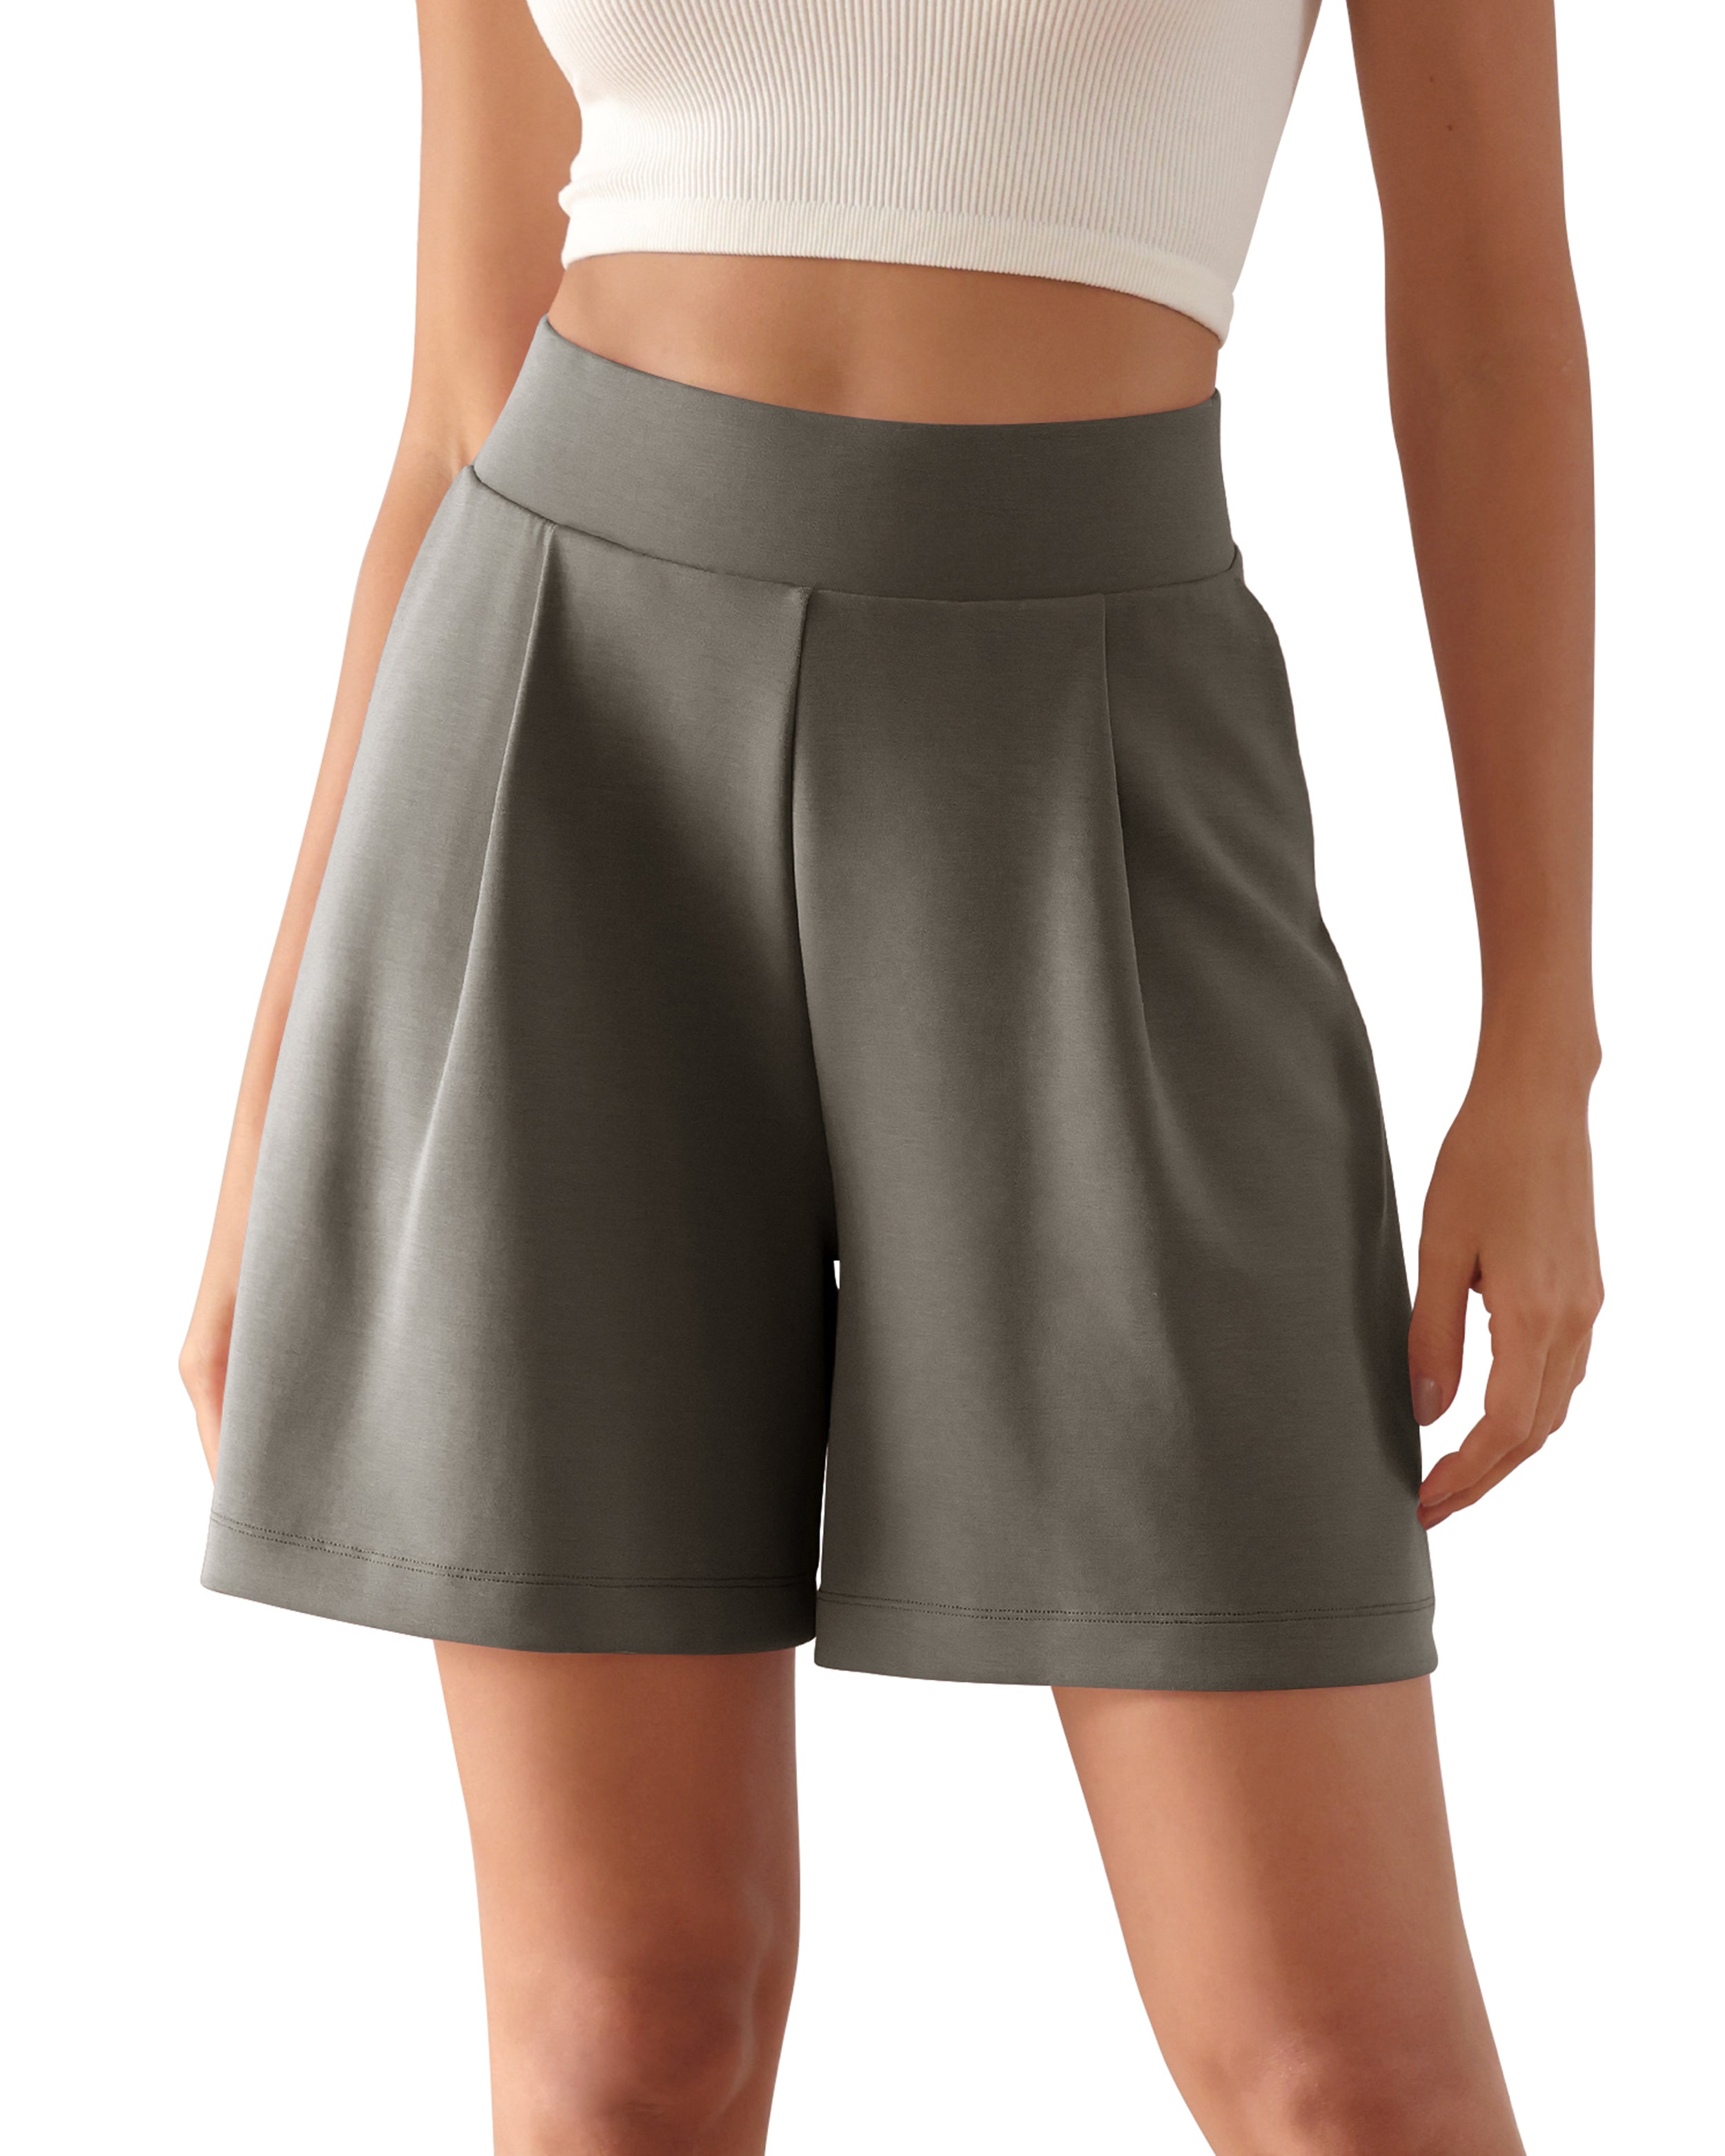 Modal Soft High Waist Wide Leg Shorts with Pockets Deep Grey 6 inch - ododos